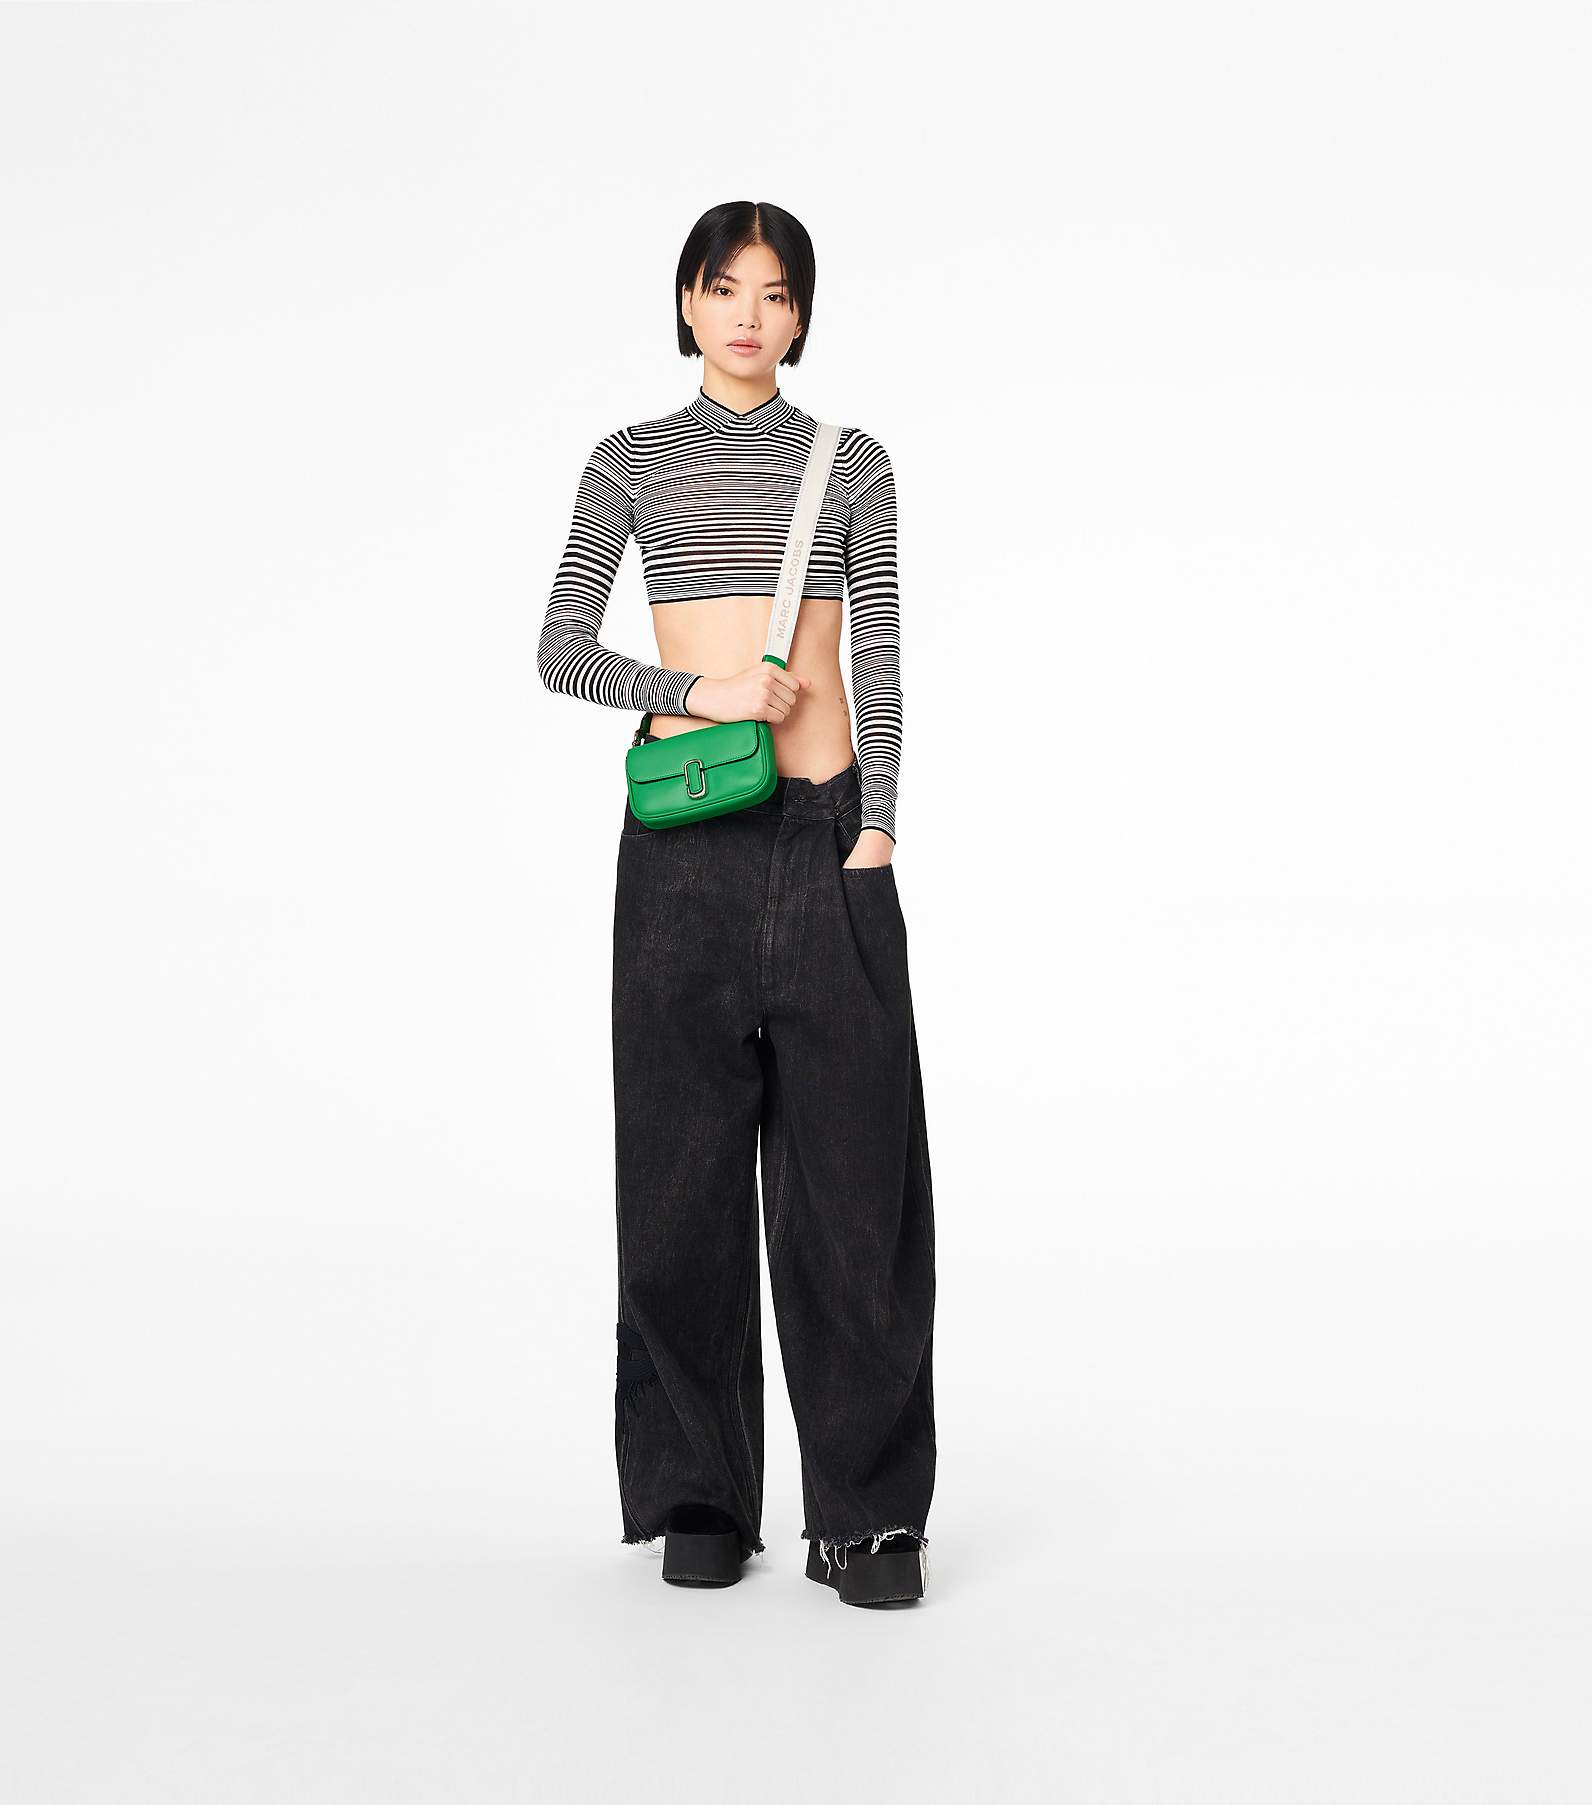 Marc Jacobs Women's The J Marc Mini Shoulder Bag, Black, One Size: Handbags